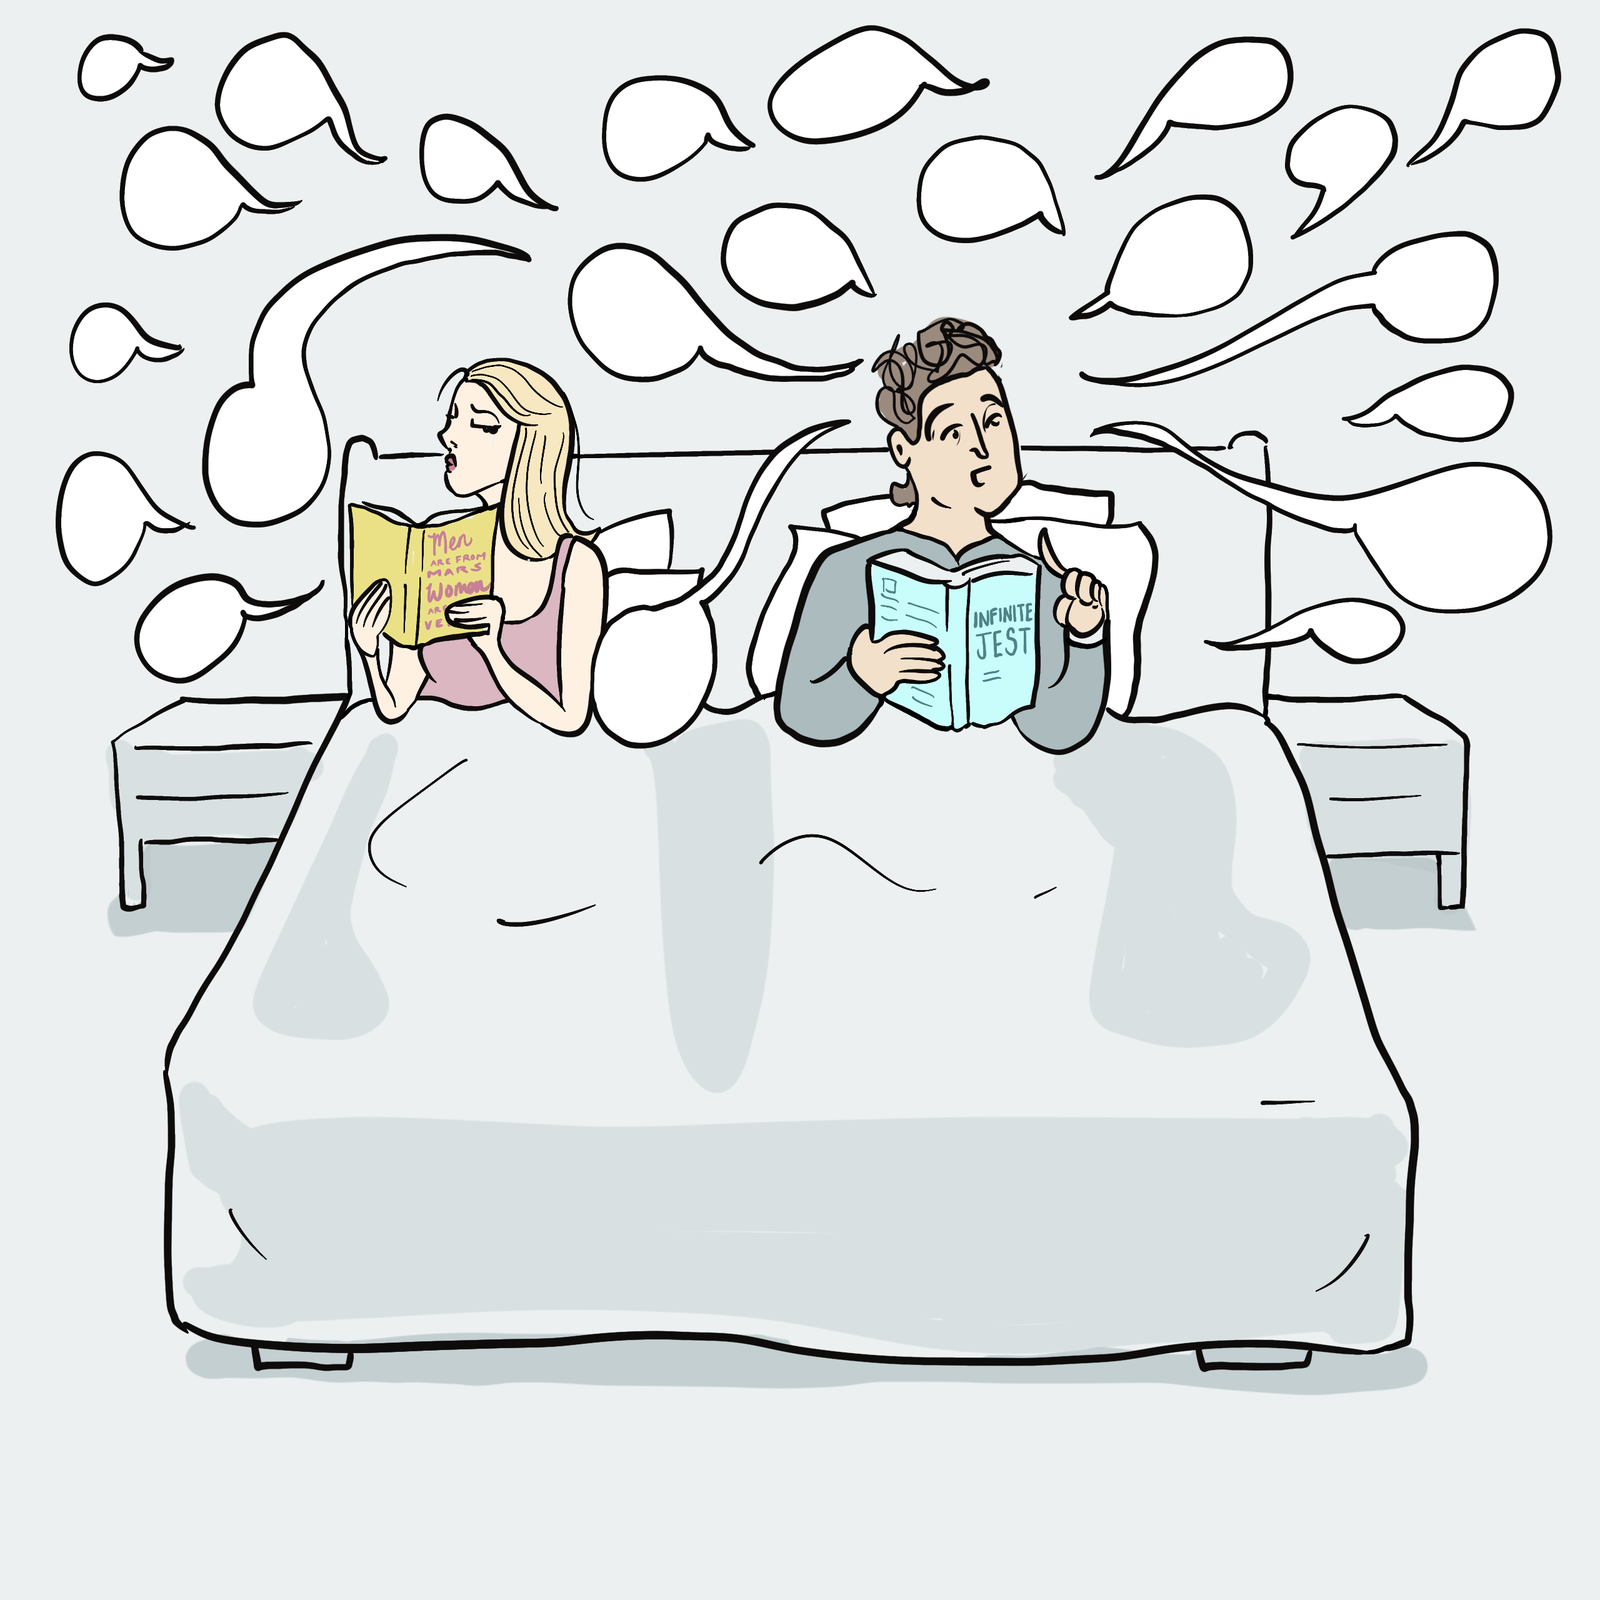 Paar im Bett, umgeben von Sprechblasen.